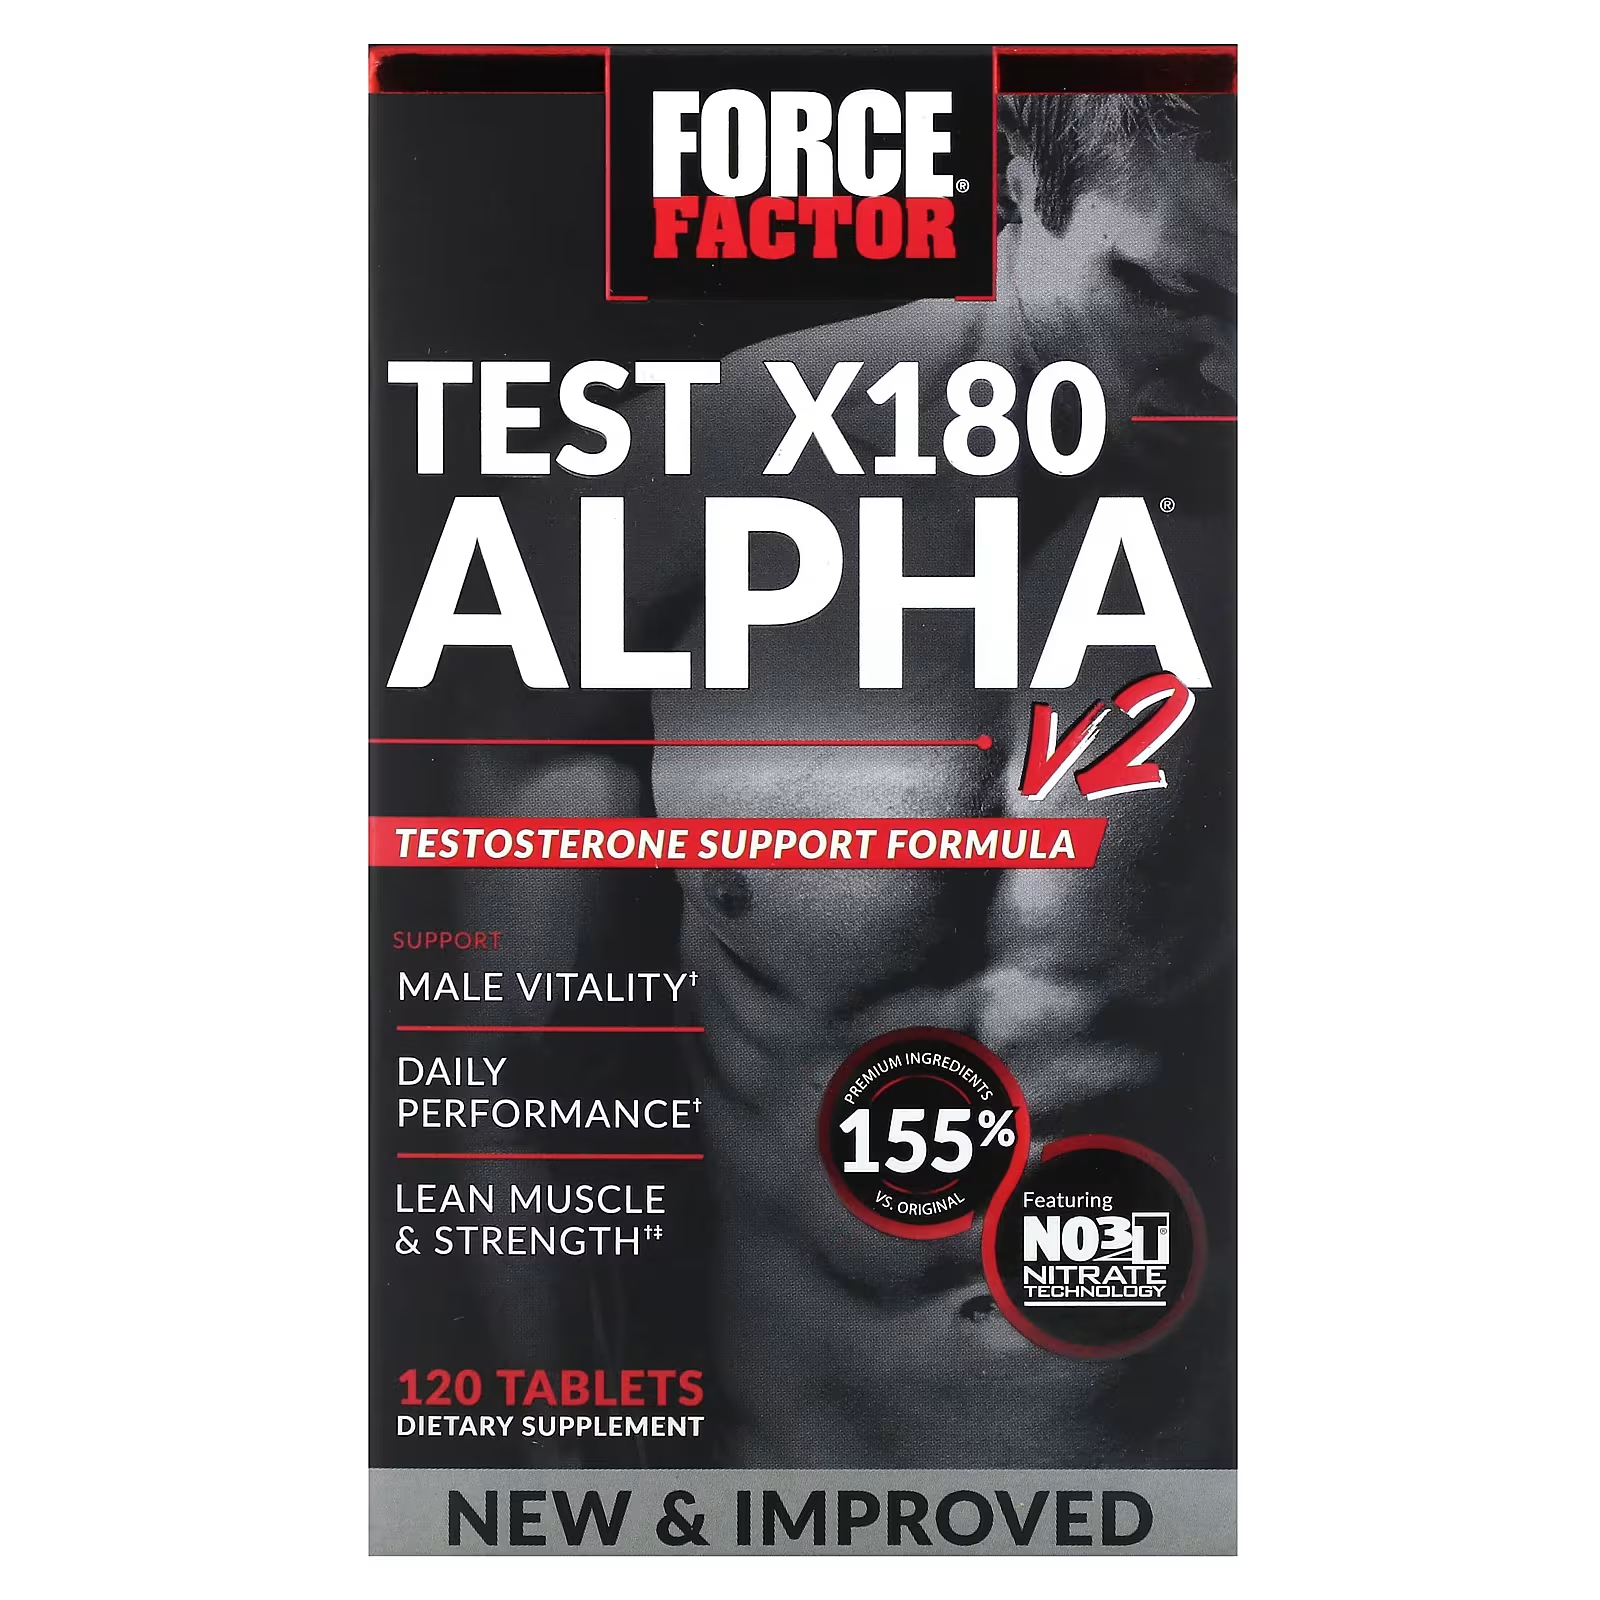 Тест на фактор силы X180 Alpha V2, 120 таблеток Force Factor